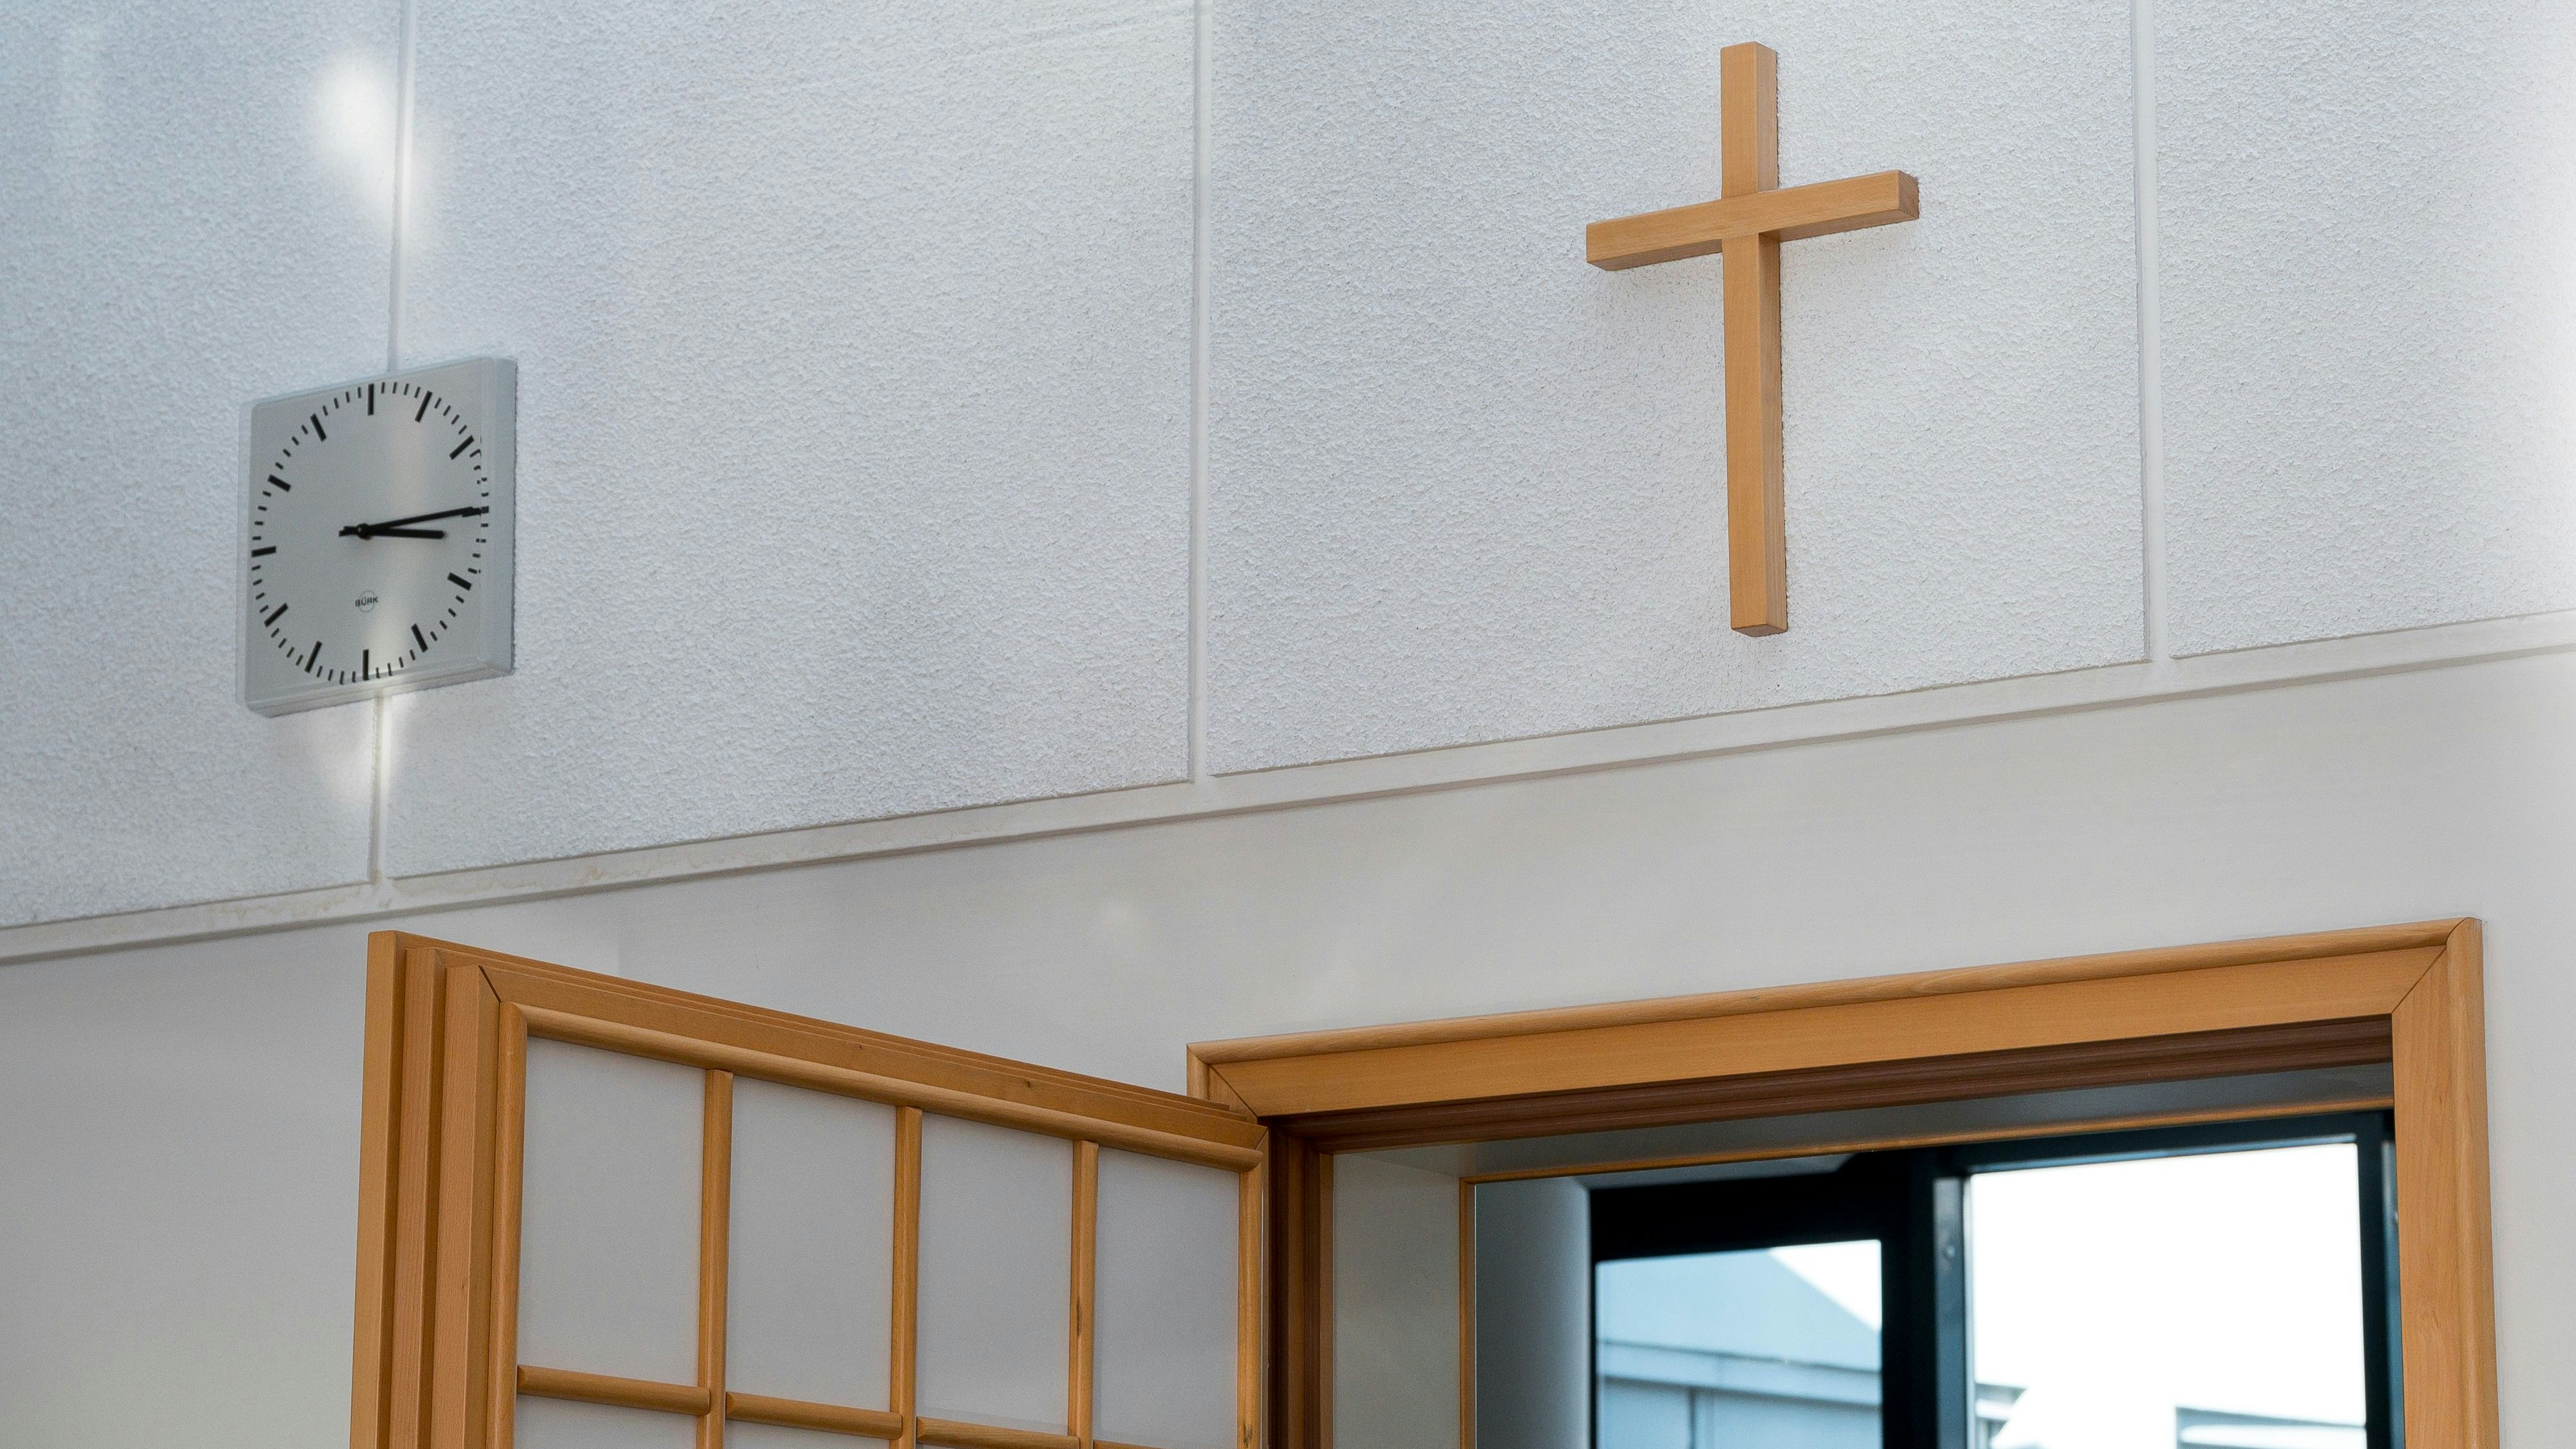 In Molbergen soll eine „Freie Christliche Bekenntnisschule“ für eine Grundschulklasse entstehen. Symbolbild: dpa